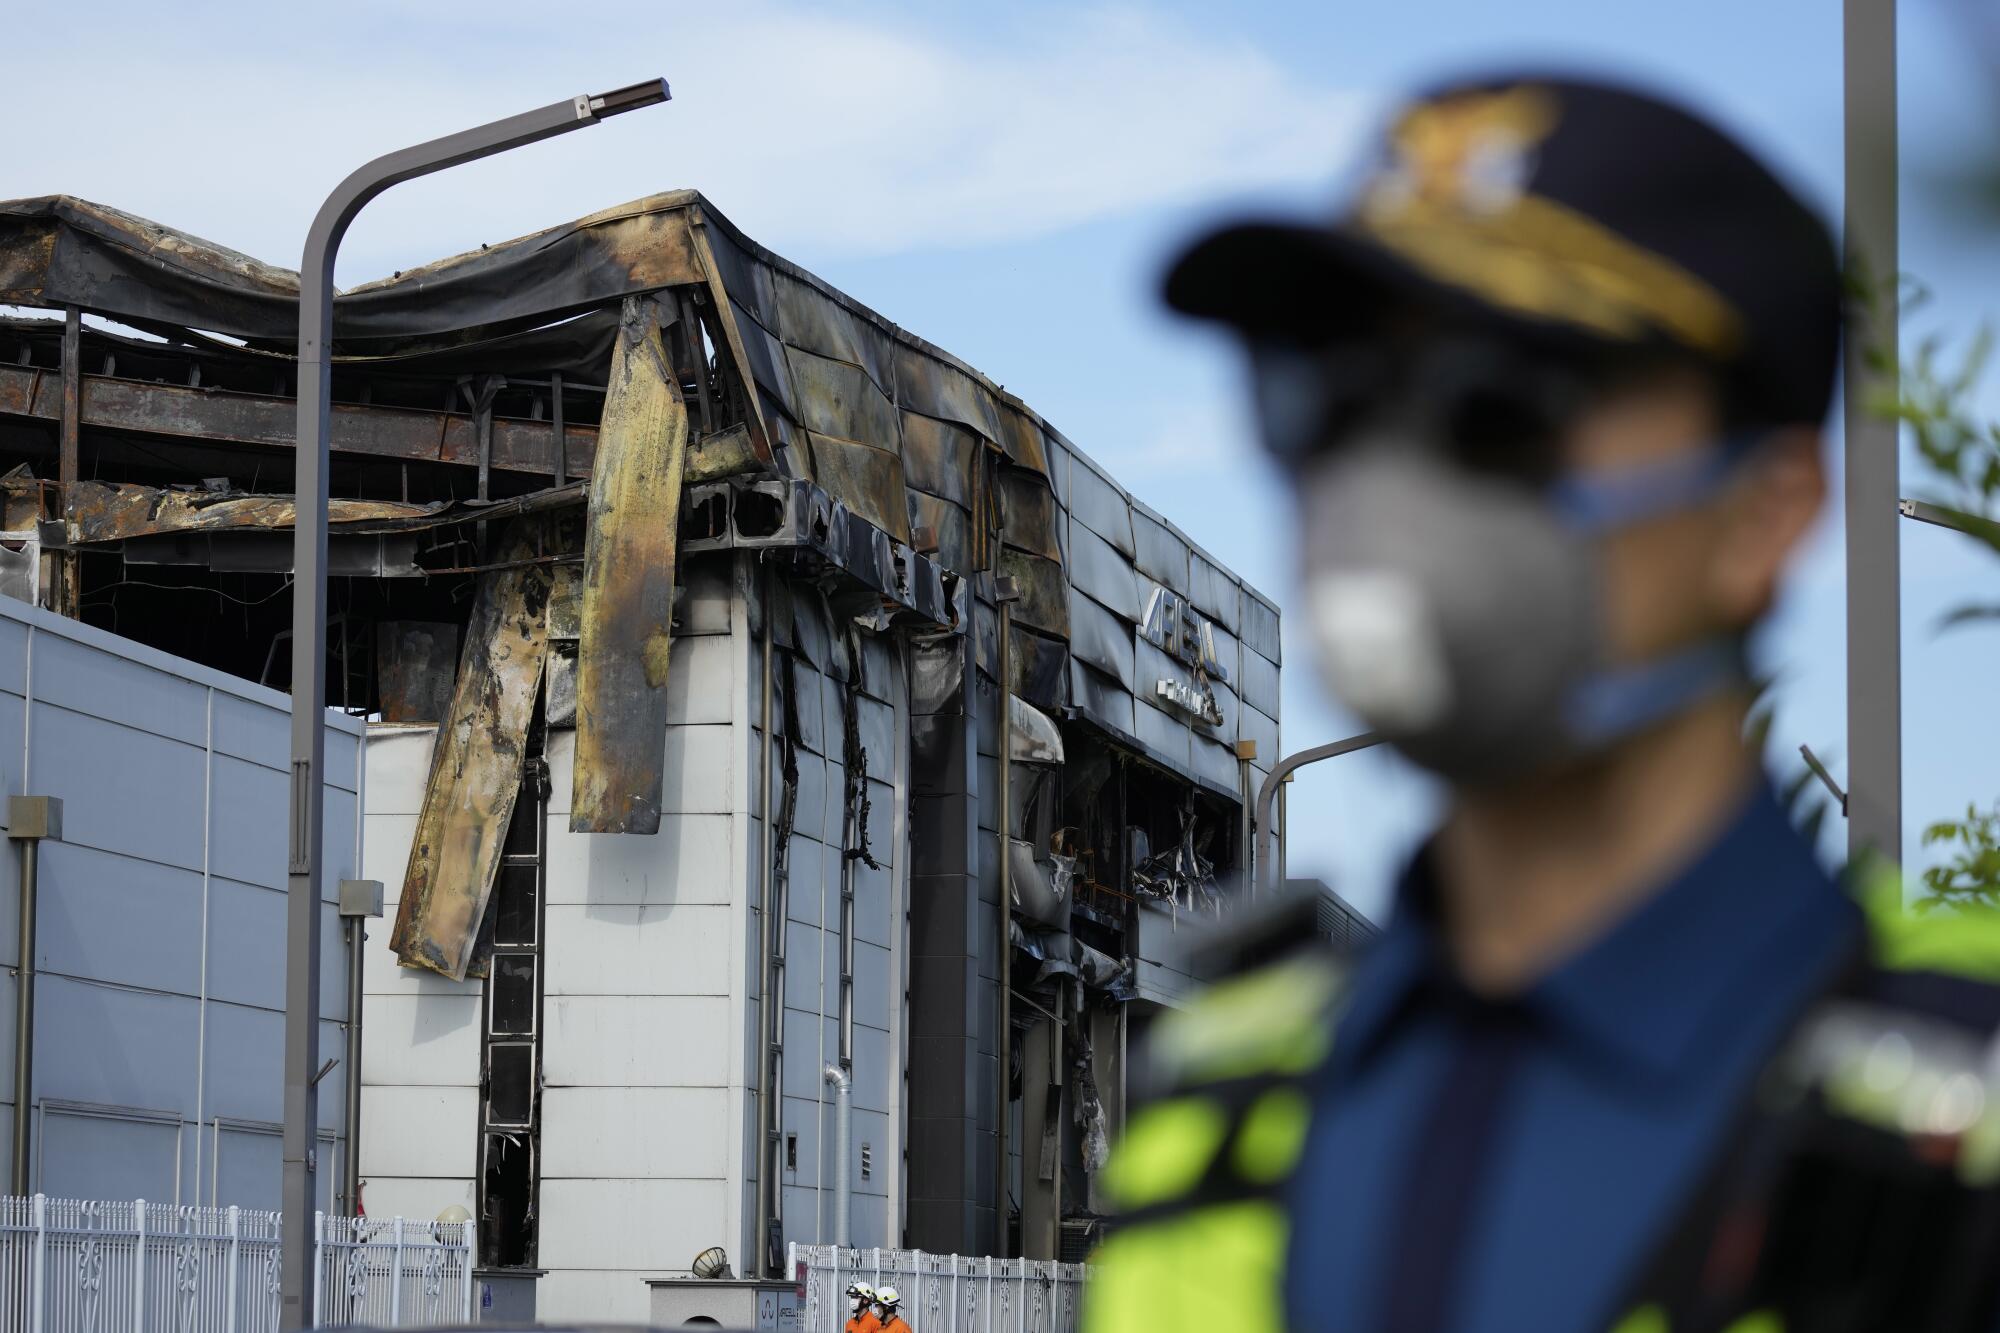 一名警官站在一栋被烧焦的建筑物旁边，位于画面前方，没有对焦。